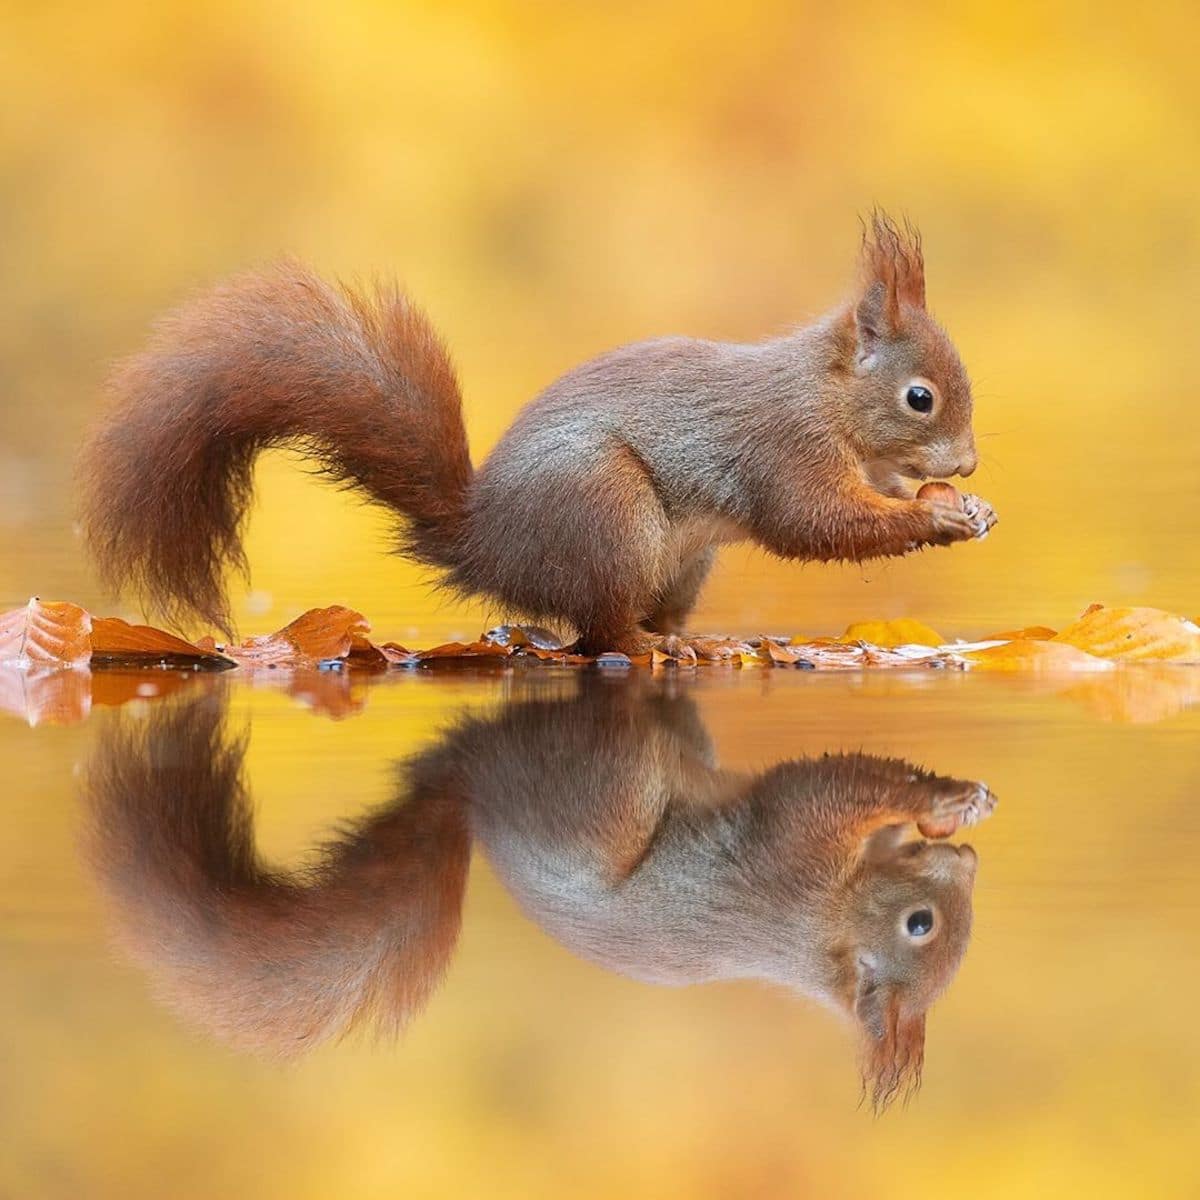 Cute Squirrel Photos by Dick van Duijn